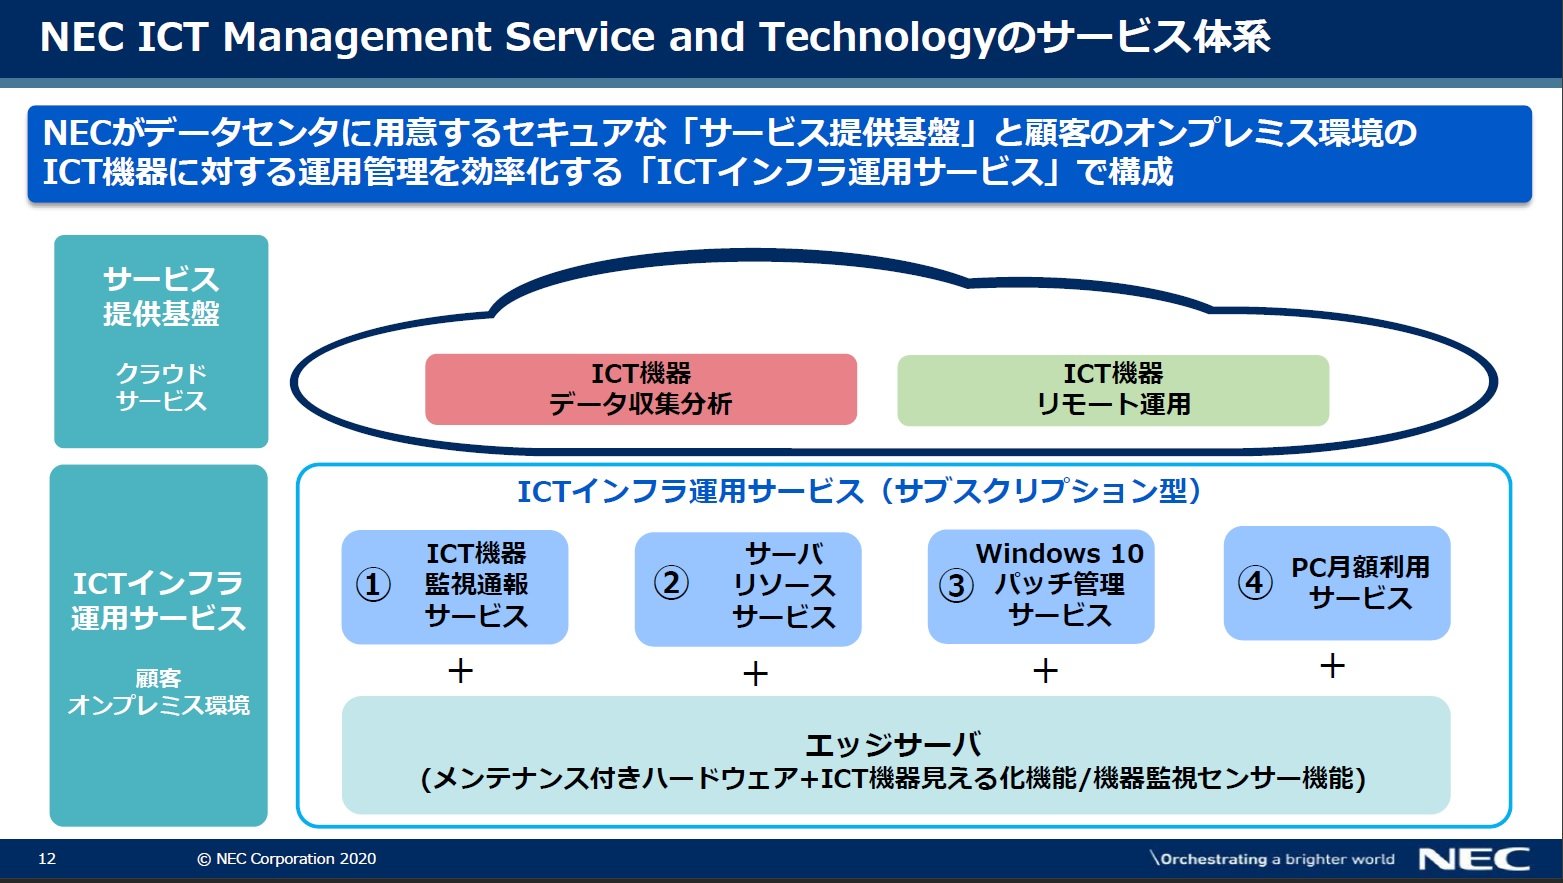 NEC ICT Management Service and TechnologẙTvioTFNECj